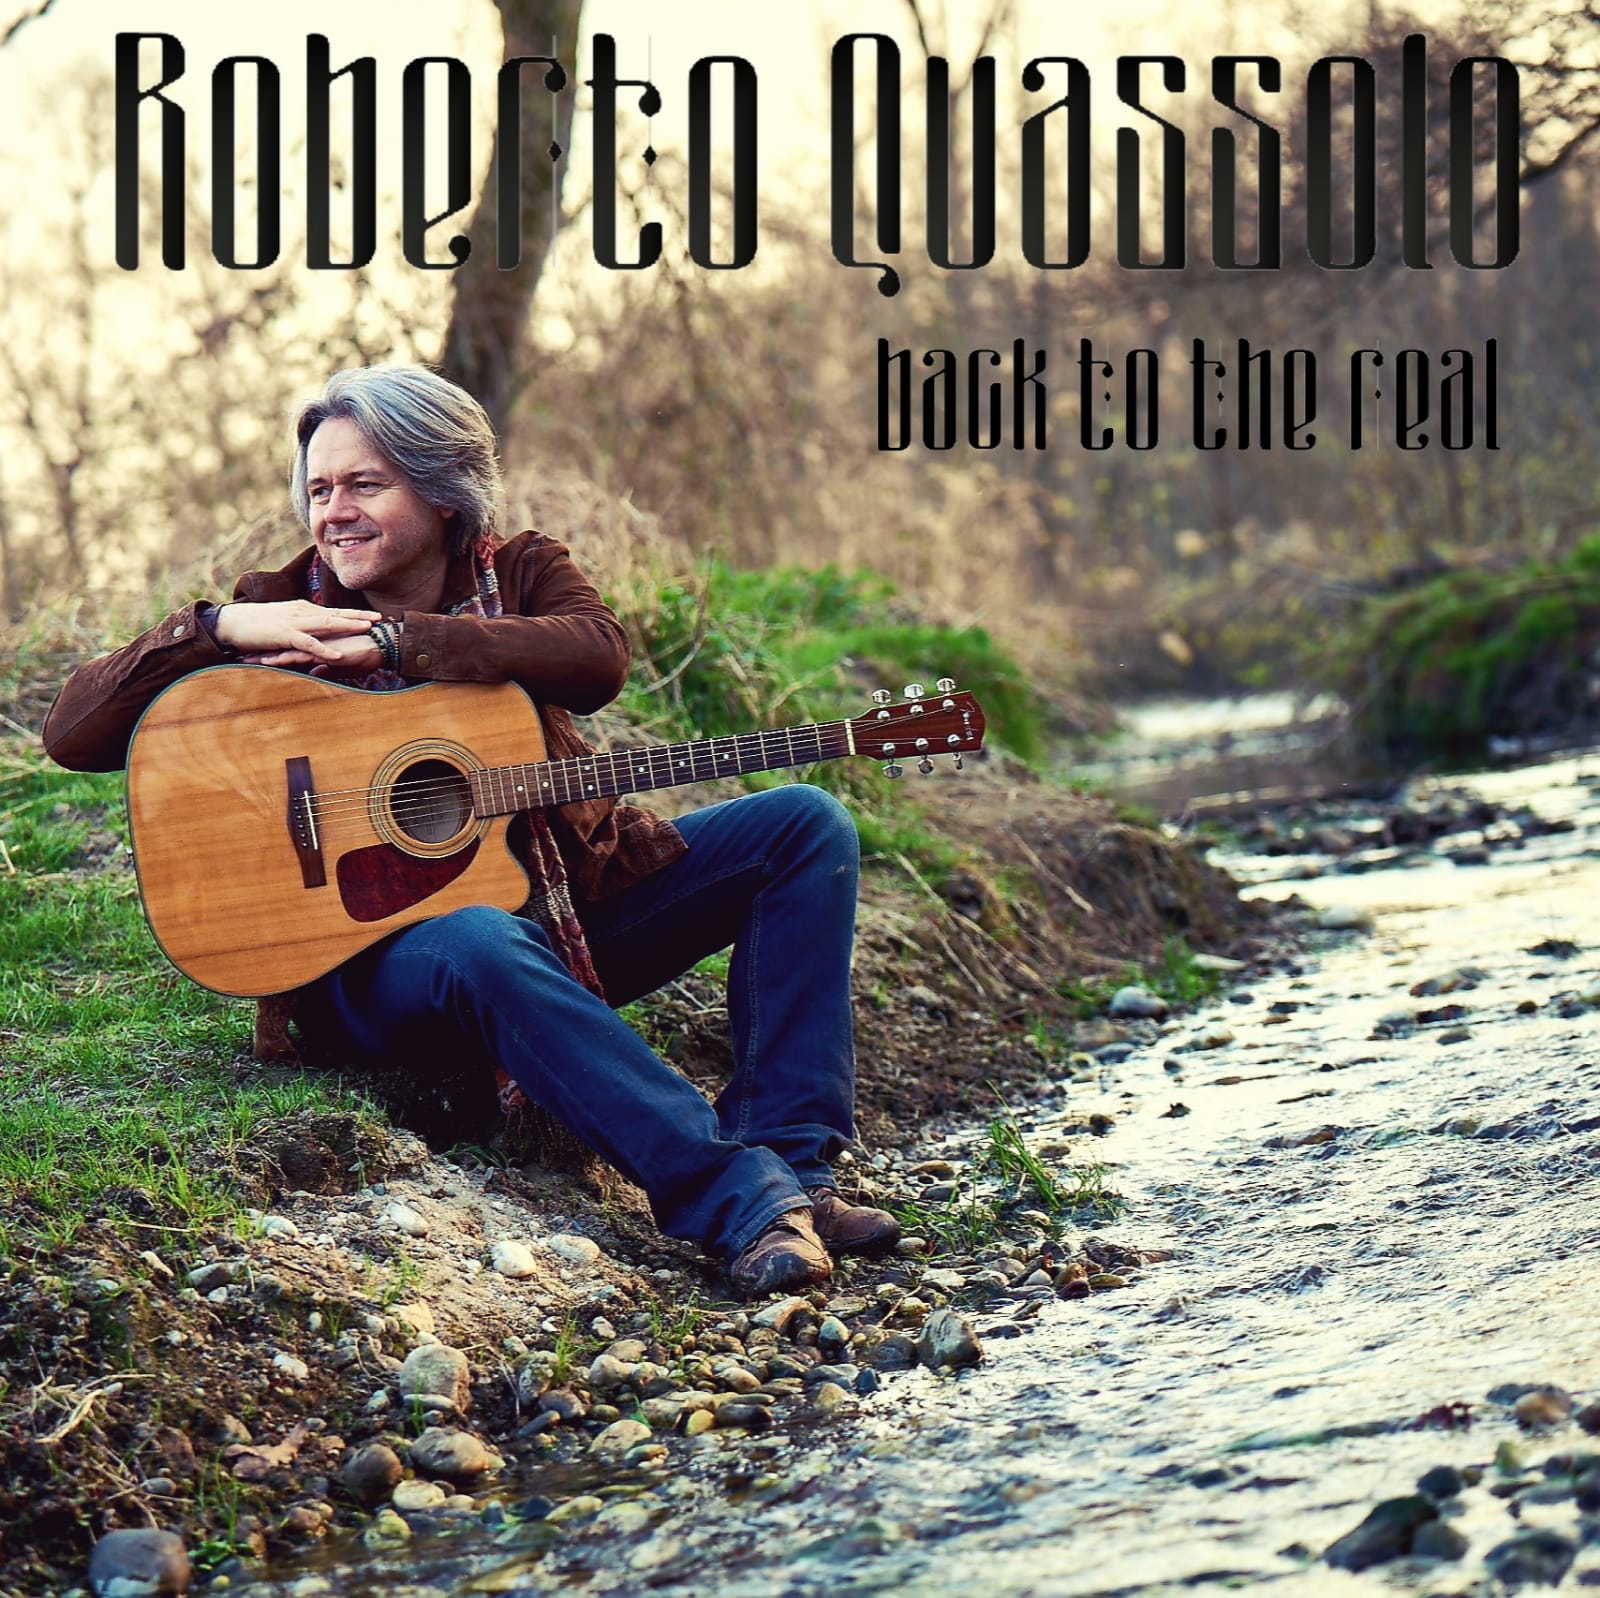 “Back to the real” con Roberto Quassolo